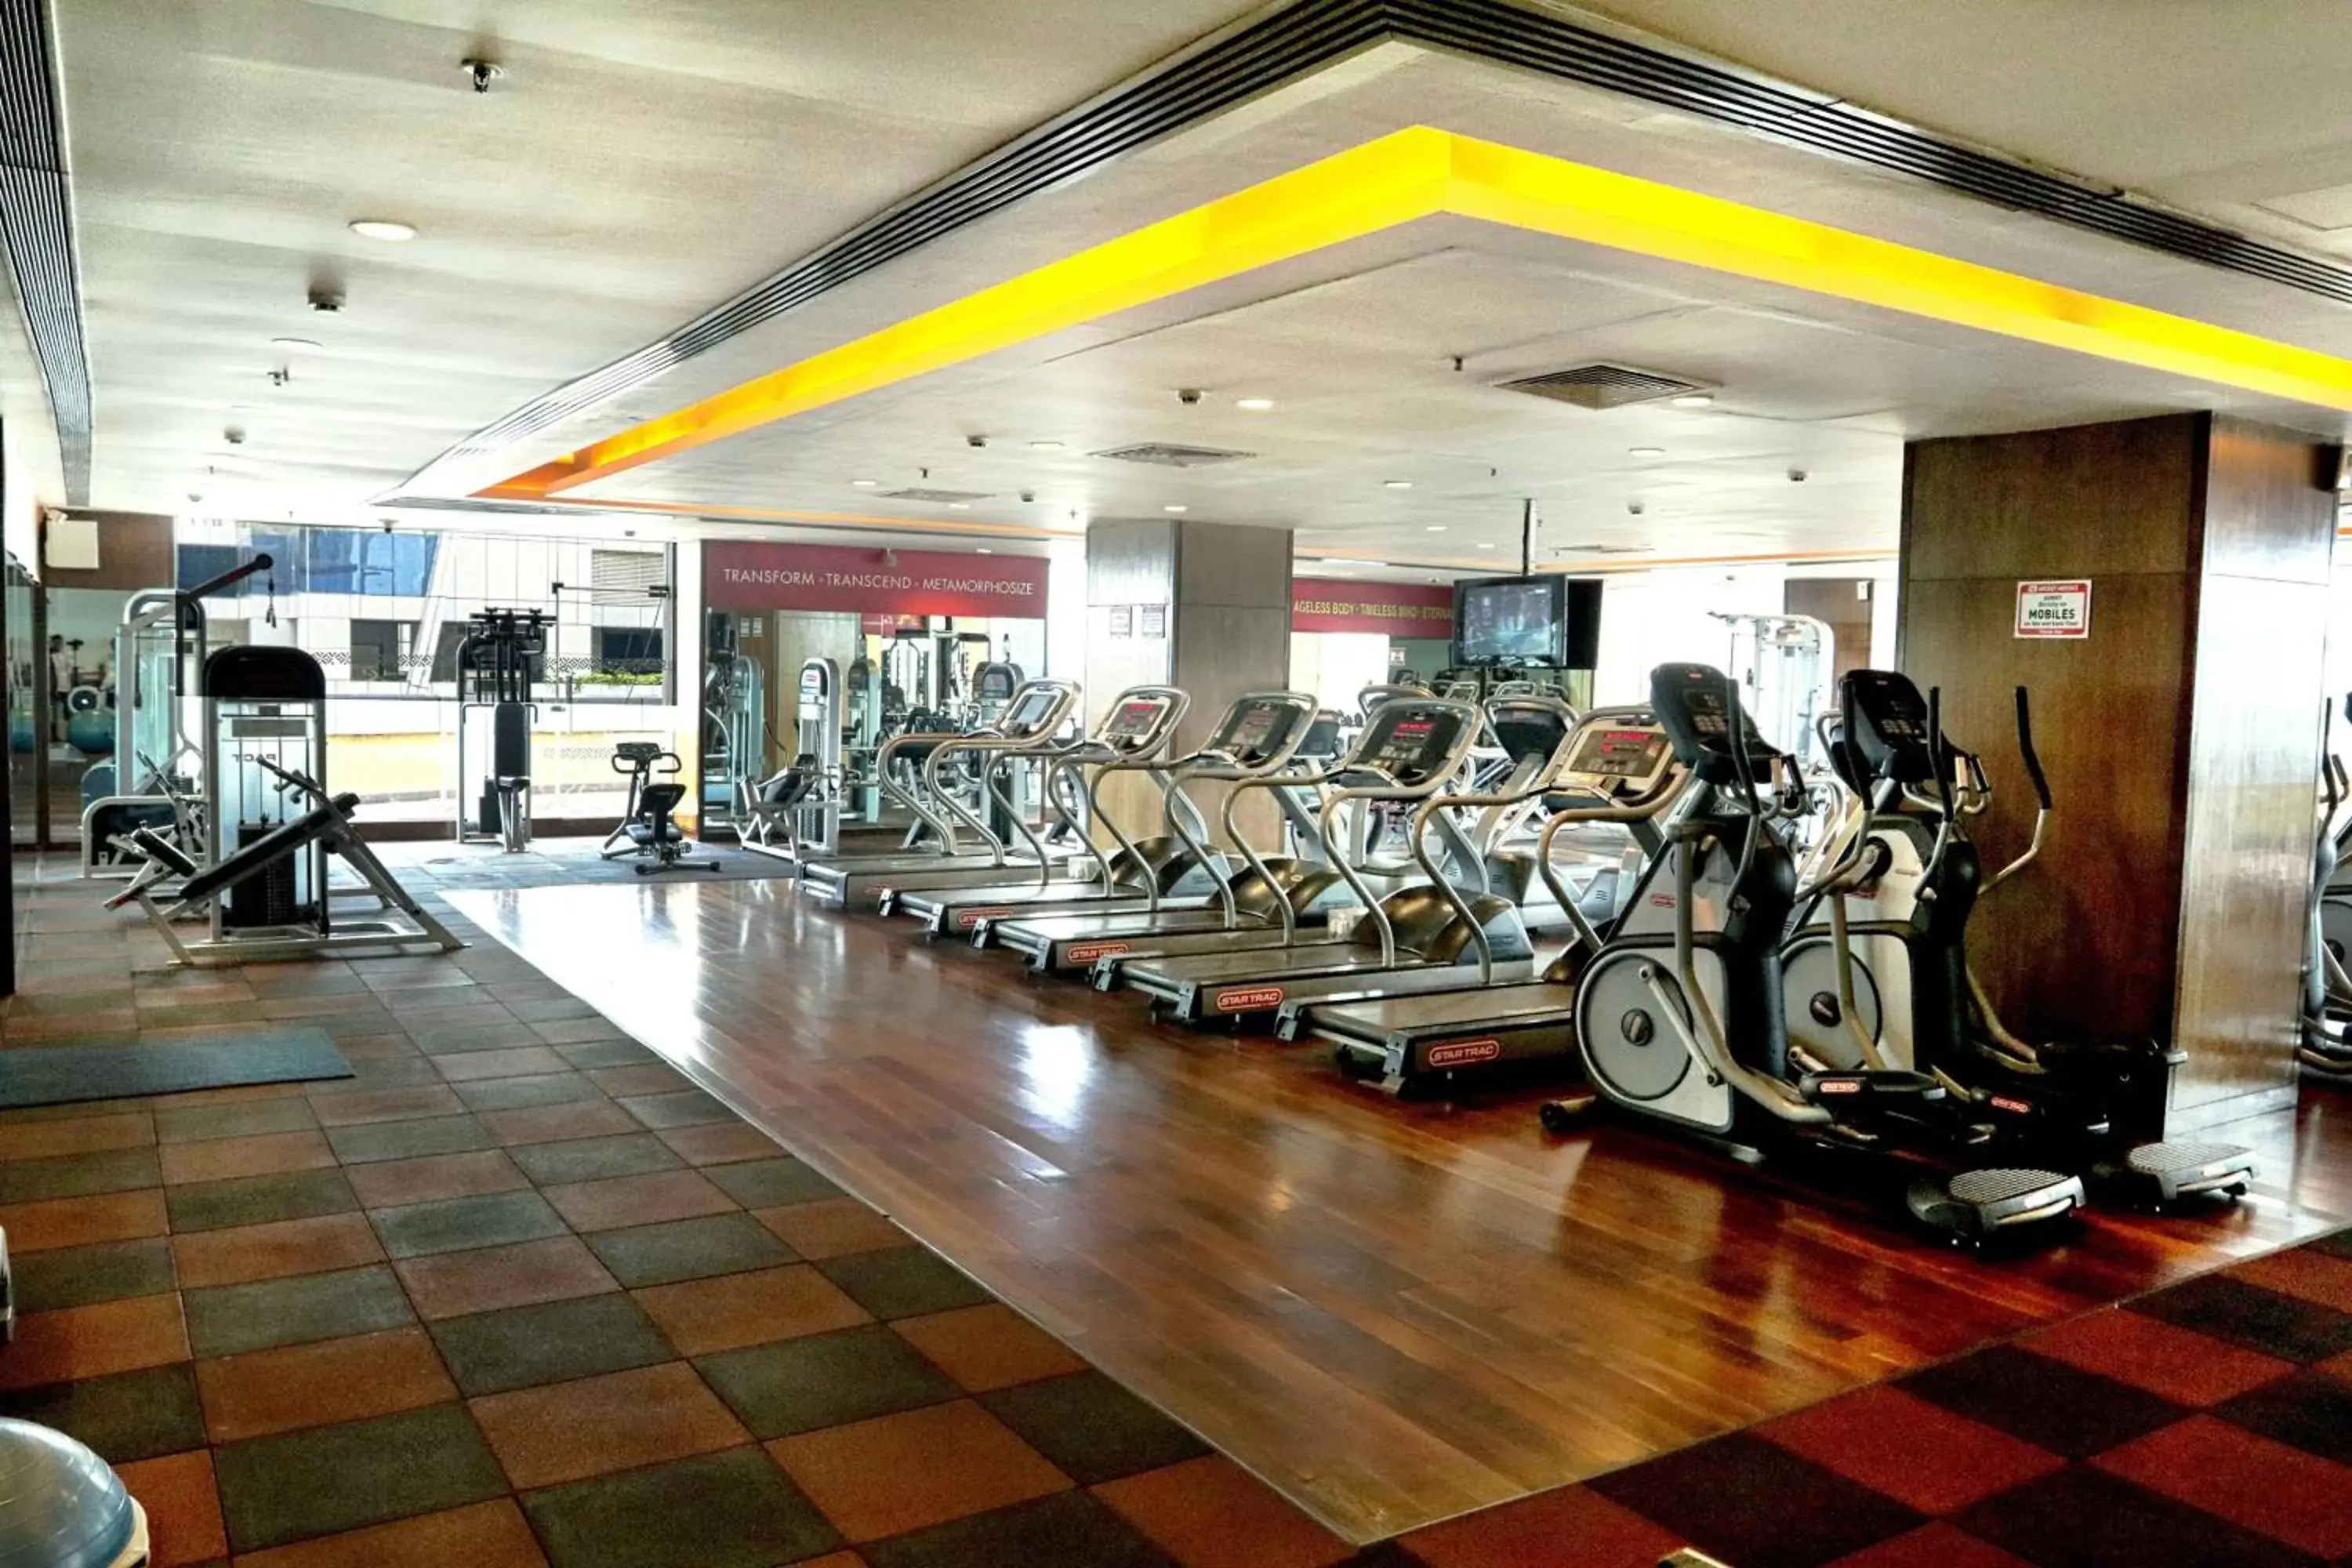 Fitness centre/facilities, Fitness Center/Facilities in Four Points by Sheraton Navi Mumbai, Vashi